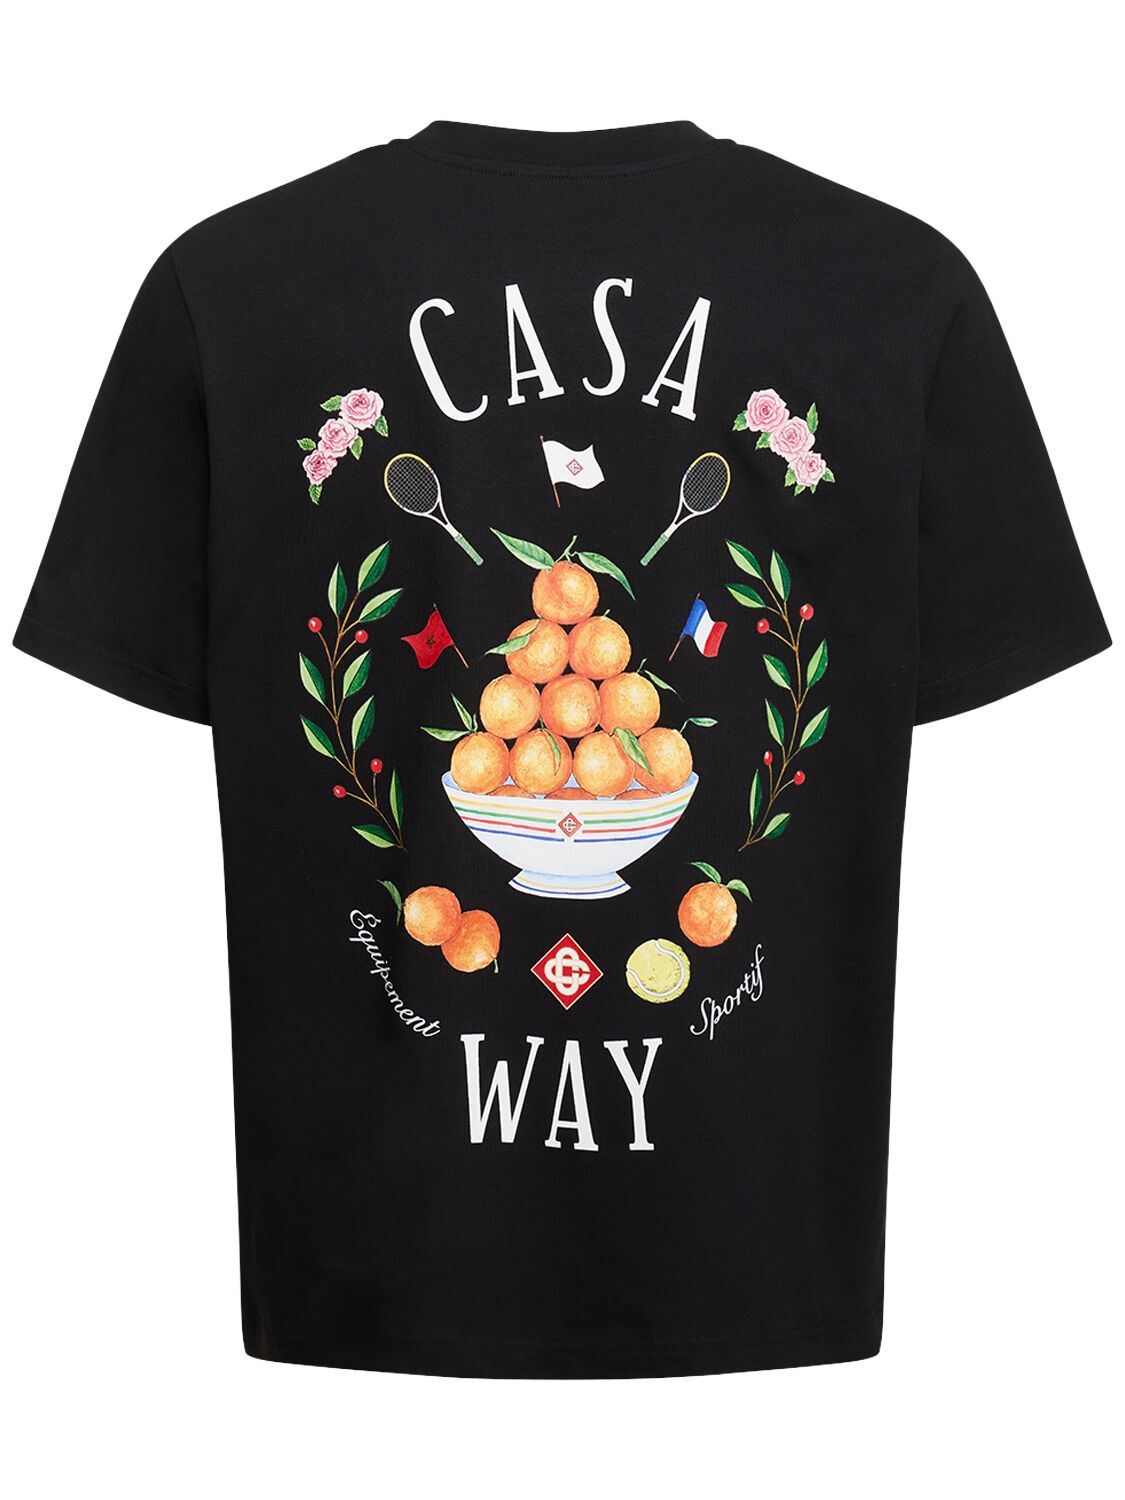 Lvr Exclusive - T-shirt En Coton Casa Way - CASABLANCA - Modalova